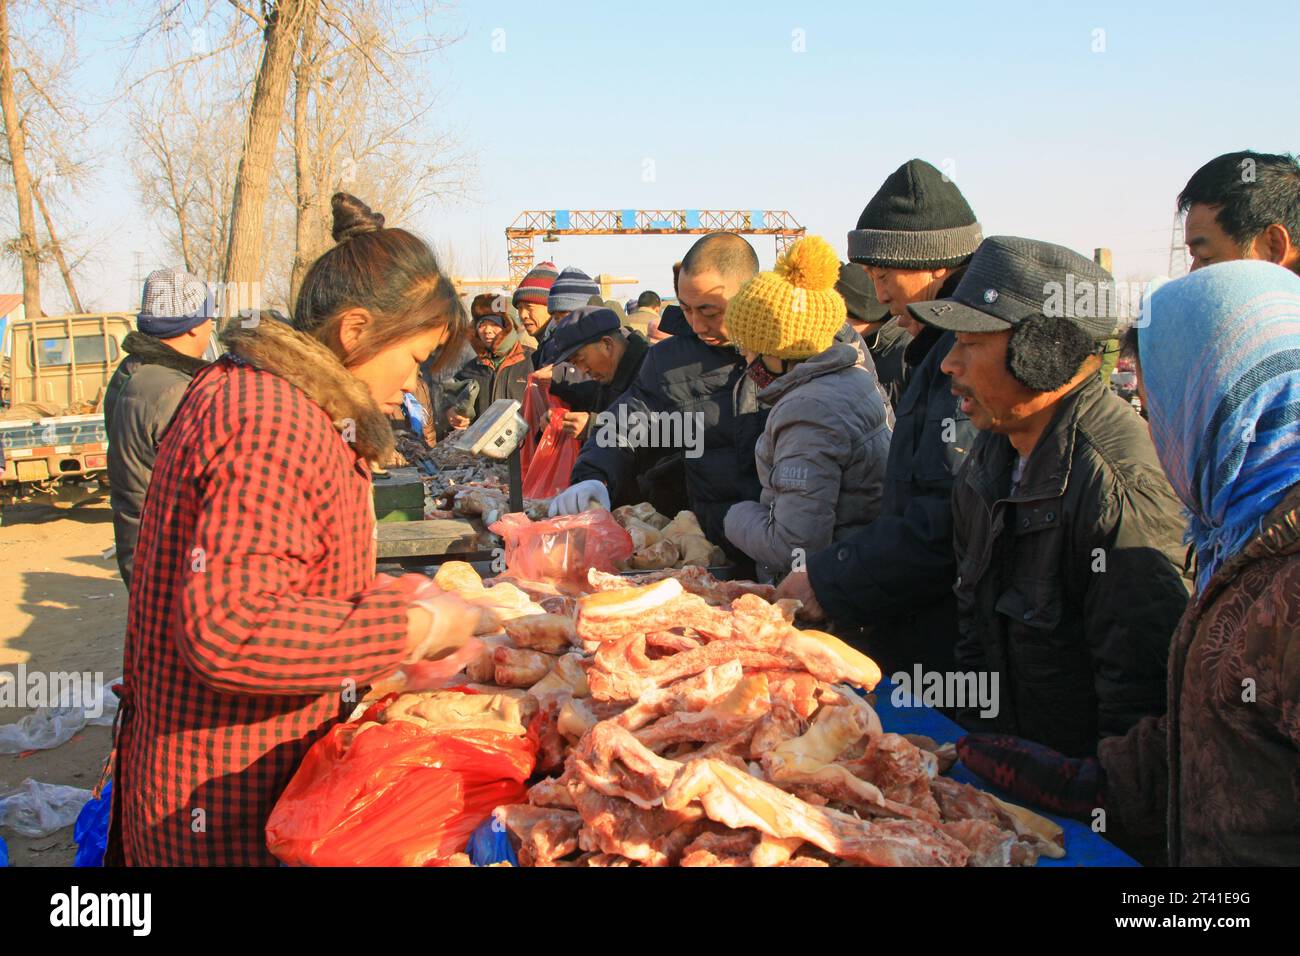 LUANNAN COUNTY - 28. JANUAR: Der Kunde und Verkäufer, der am 28. januar 2014 vor einem Fleischstand verhandelt wurde, Luannan County, Provinz Hebei, China. Stockfoto